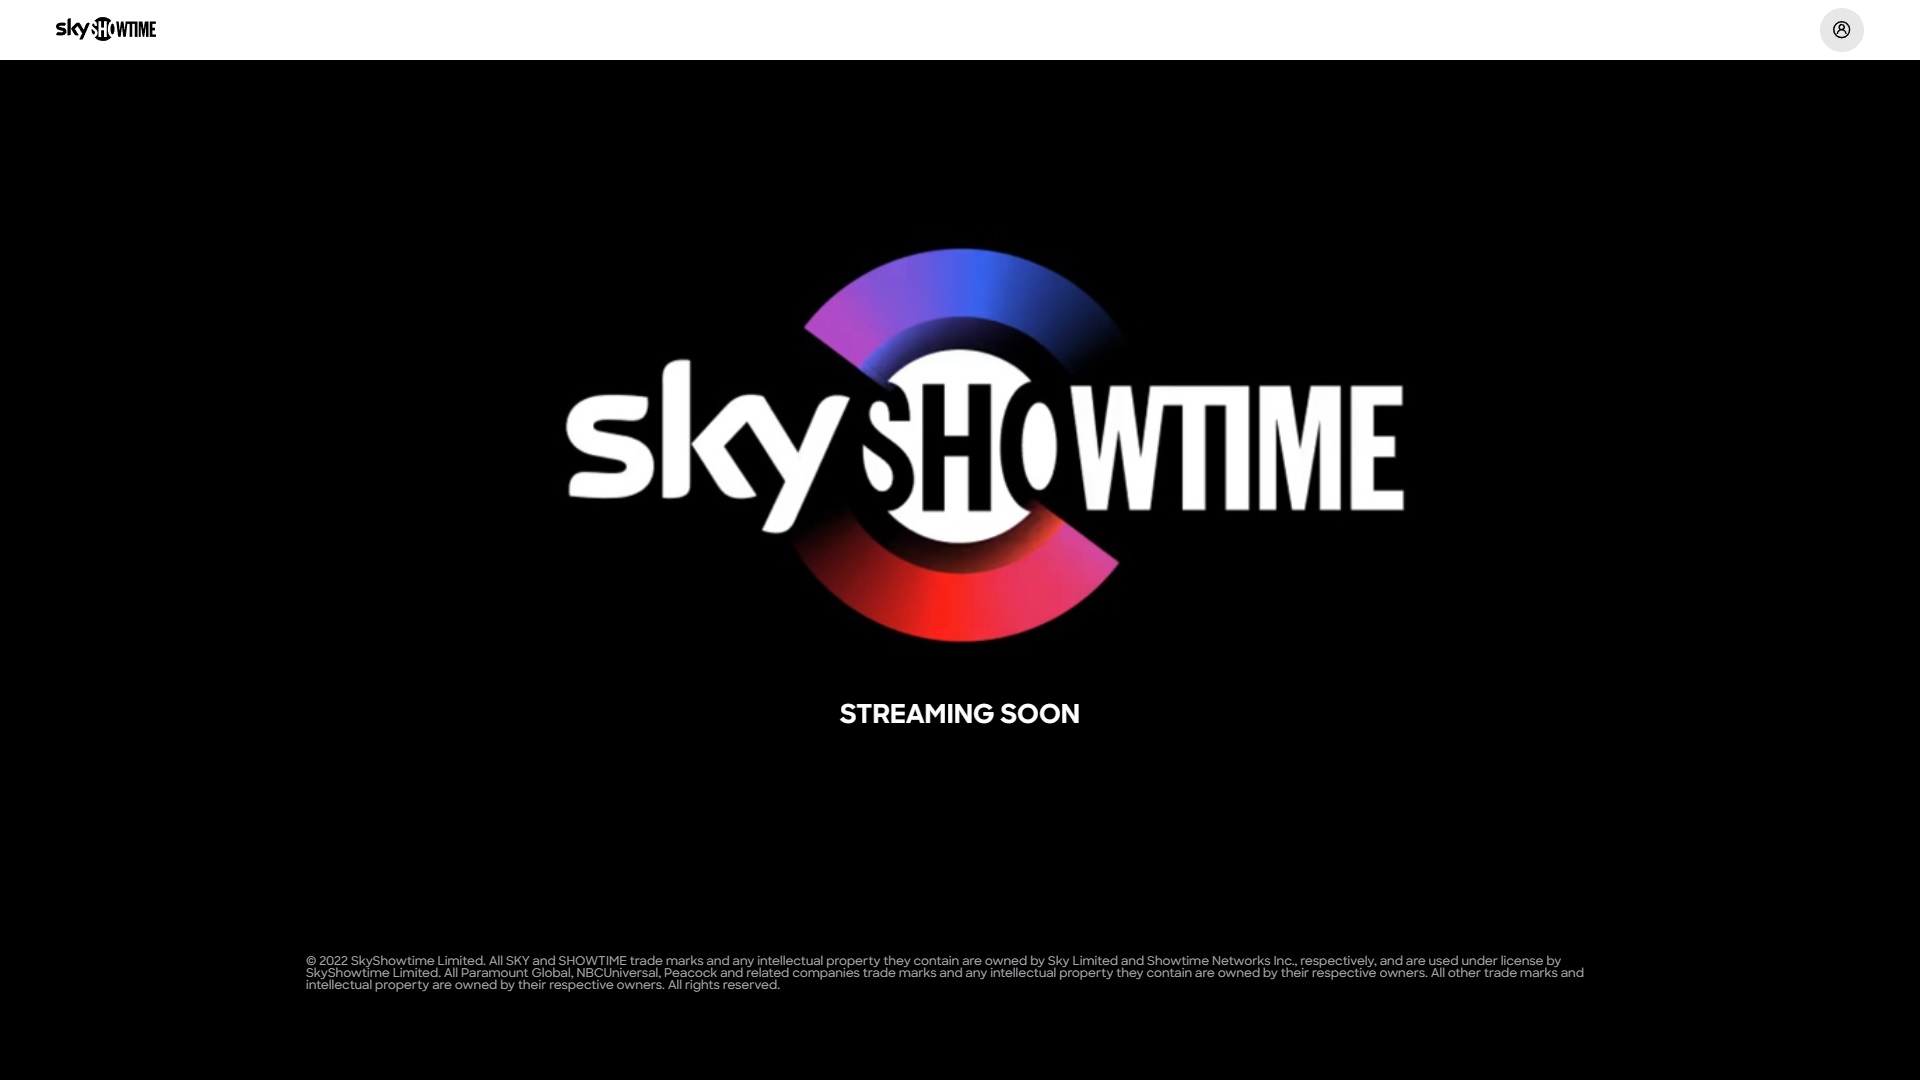 SkyShowtime logo